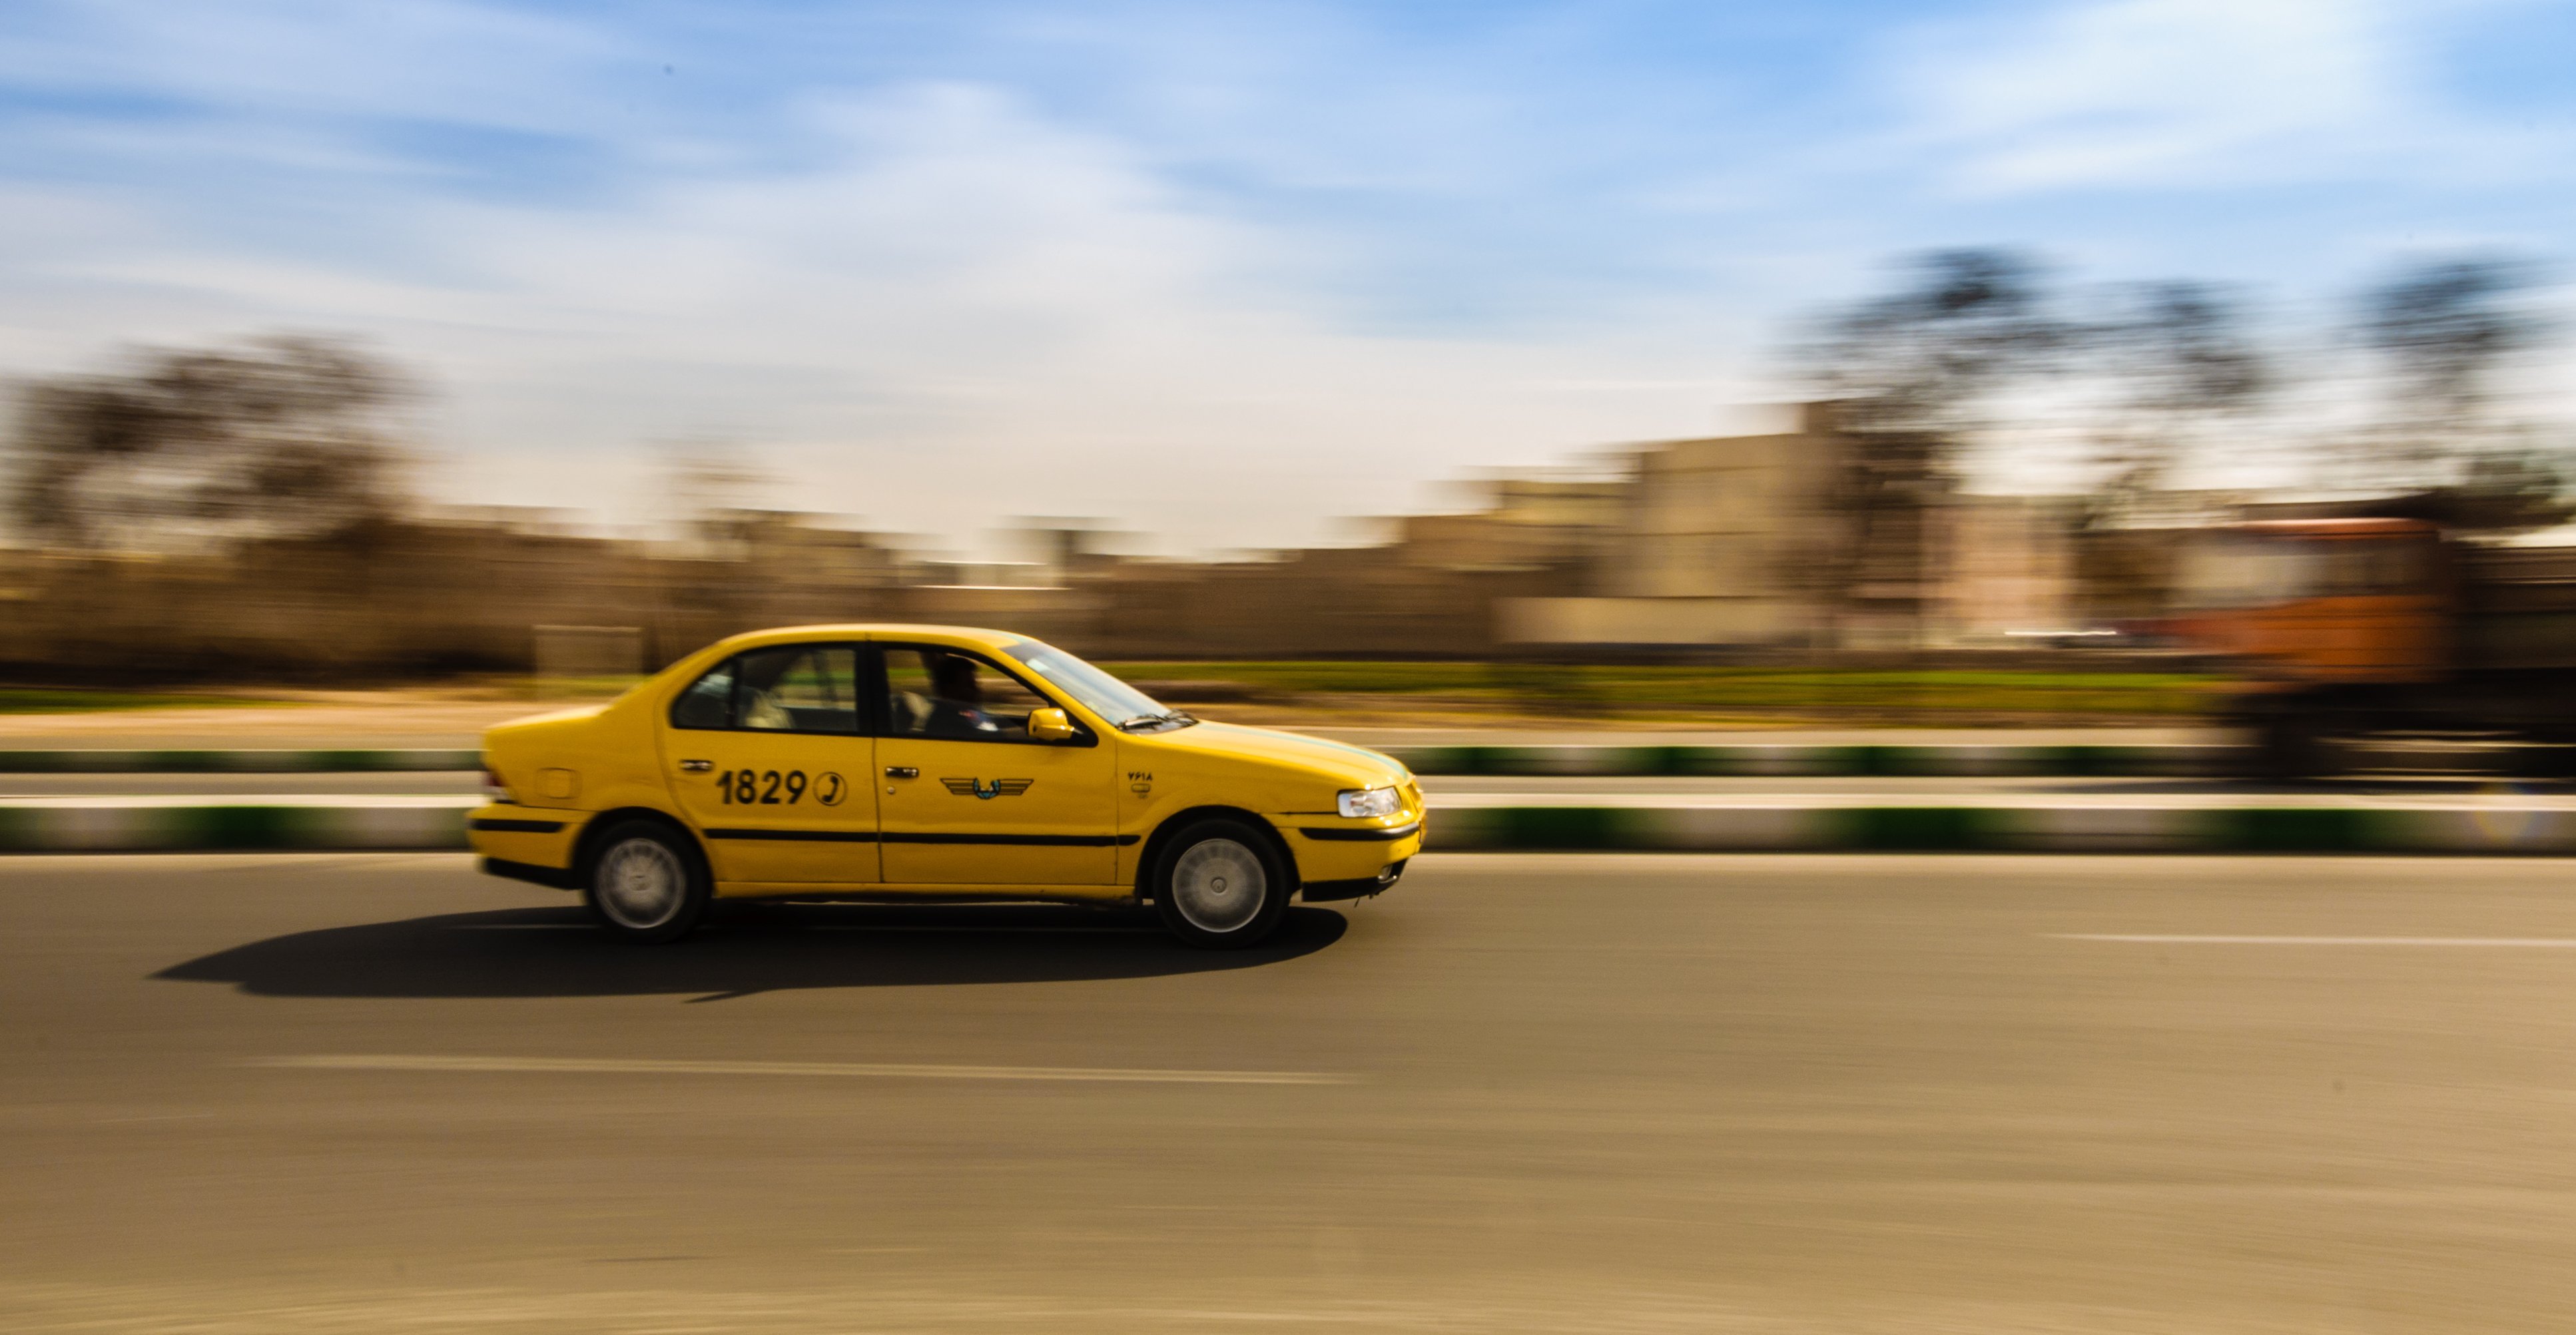 Хоррор такси. Opel Omega Taxi. Такси на дороге. Такси фон. Такси фото.